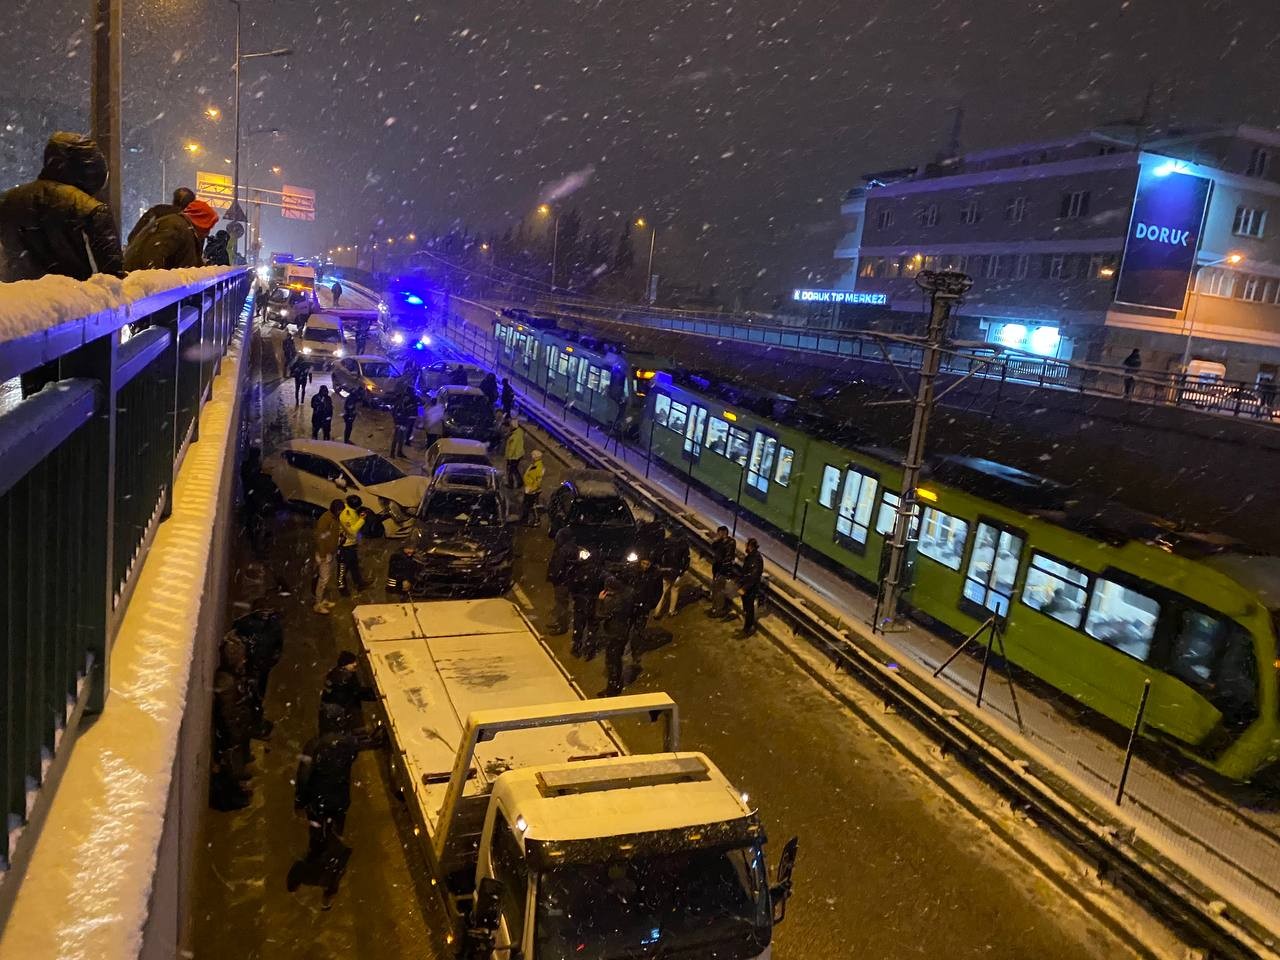 Bursa’da kar yağışı nedeniyle kayganlaşan yolda kontrolden çıkan 11 araç kayarak birbirine girdi. Zincirleme kazada 2 kişi yaralandı. Ana yol ise ...